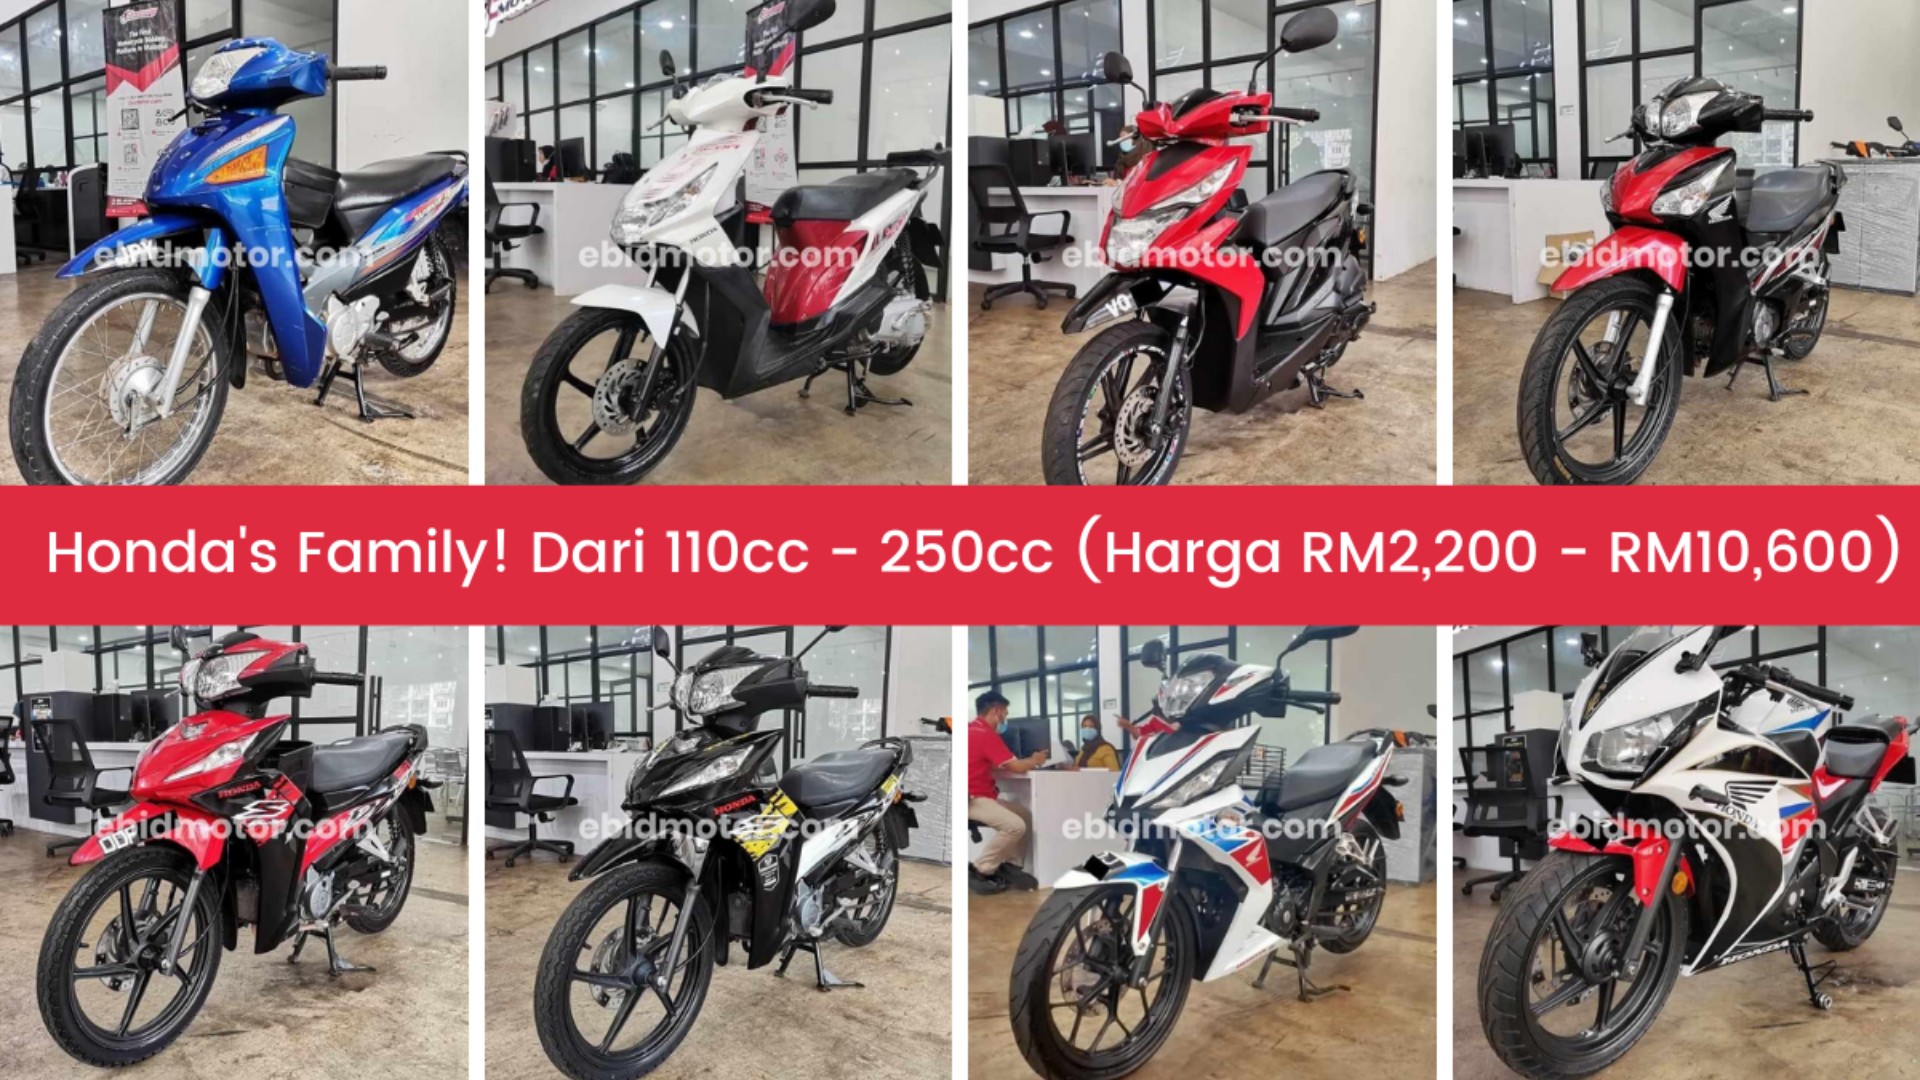 Motosikal Berjenama Honda Dari Harga RM2,200! Ada Kapcai, Scooter & Superbike! Harga Mampu Milik!